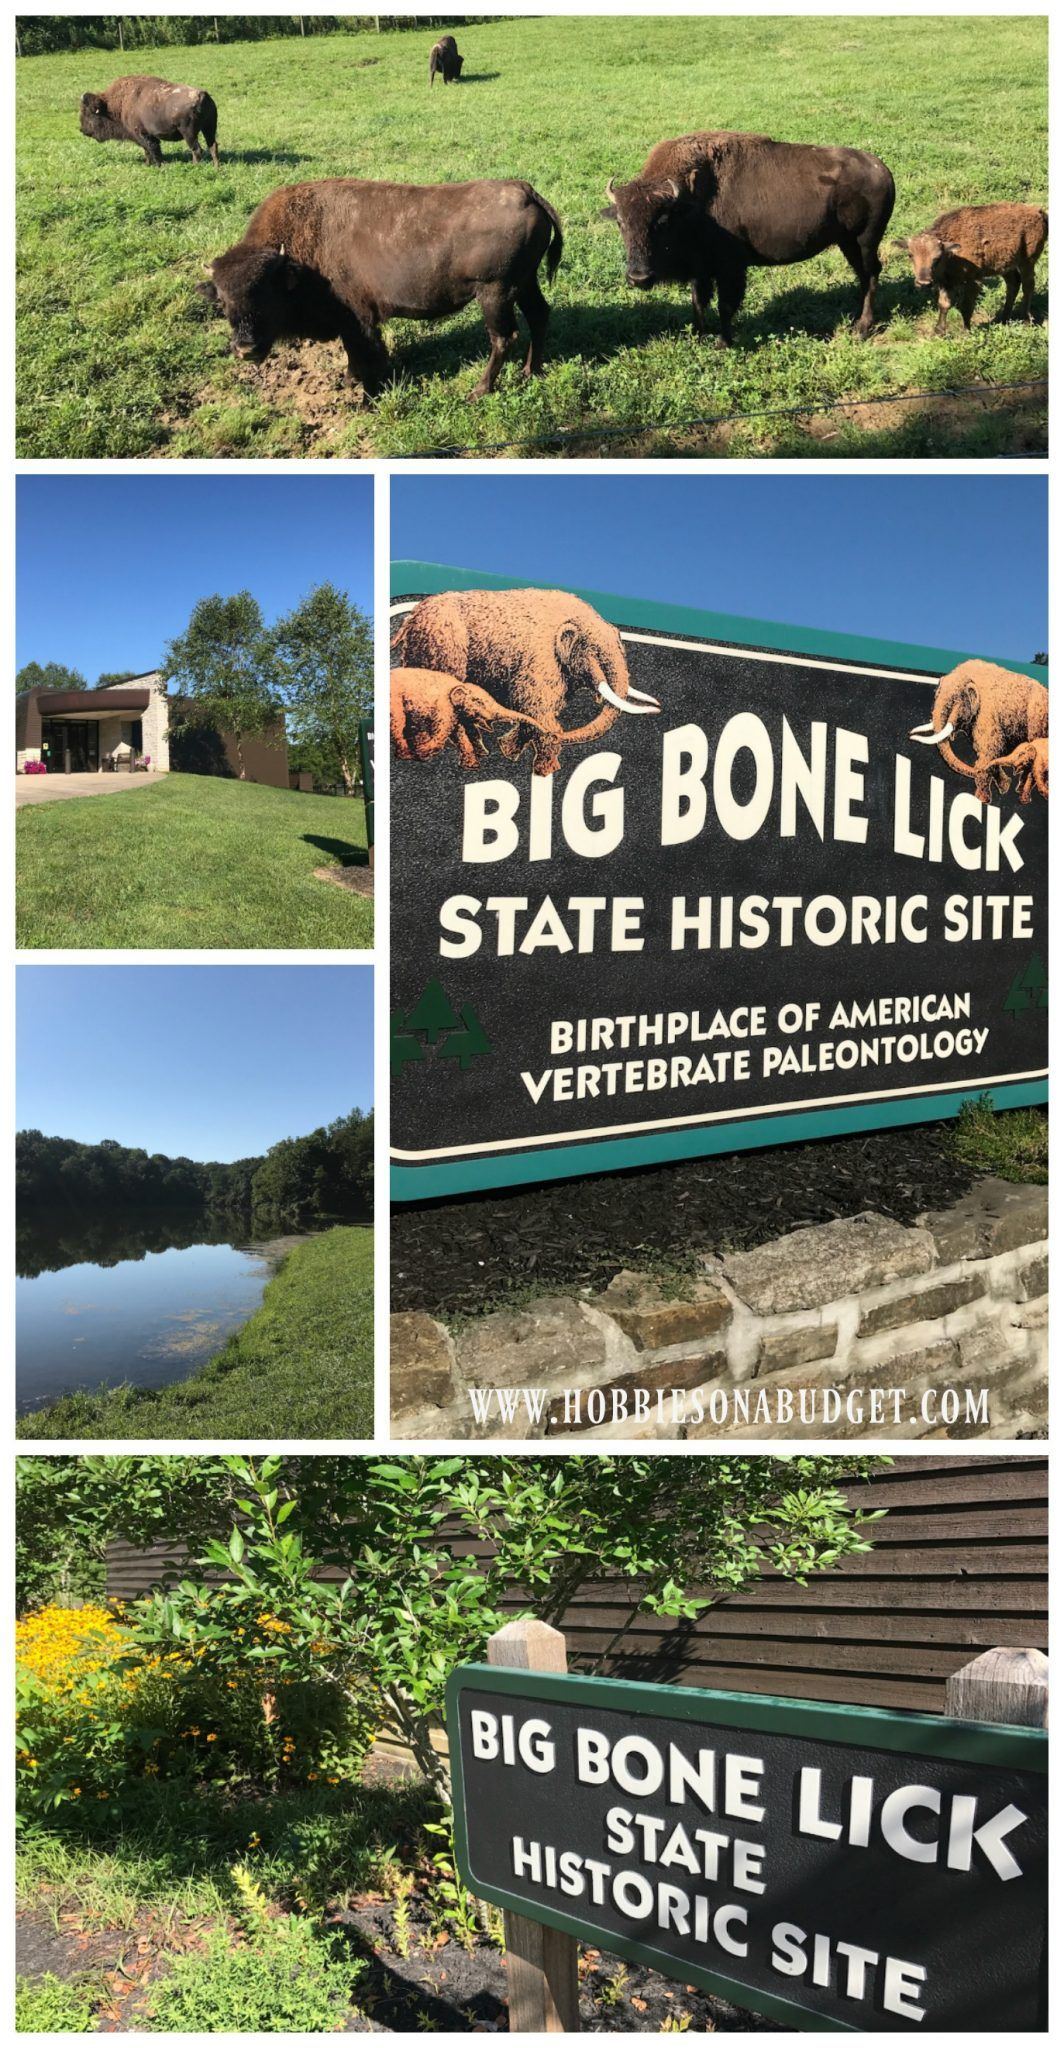 The S. reccomend Big bone lick park state